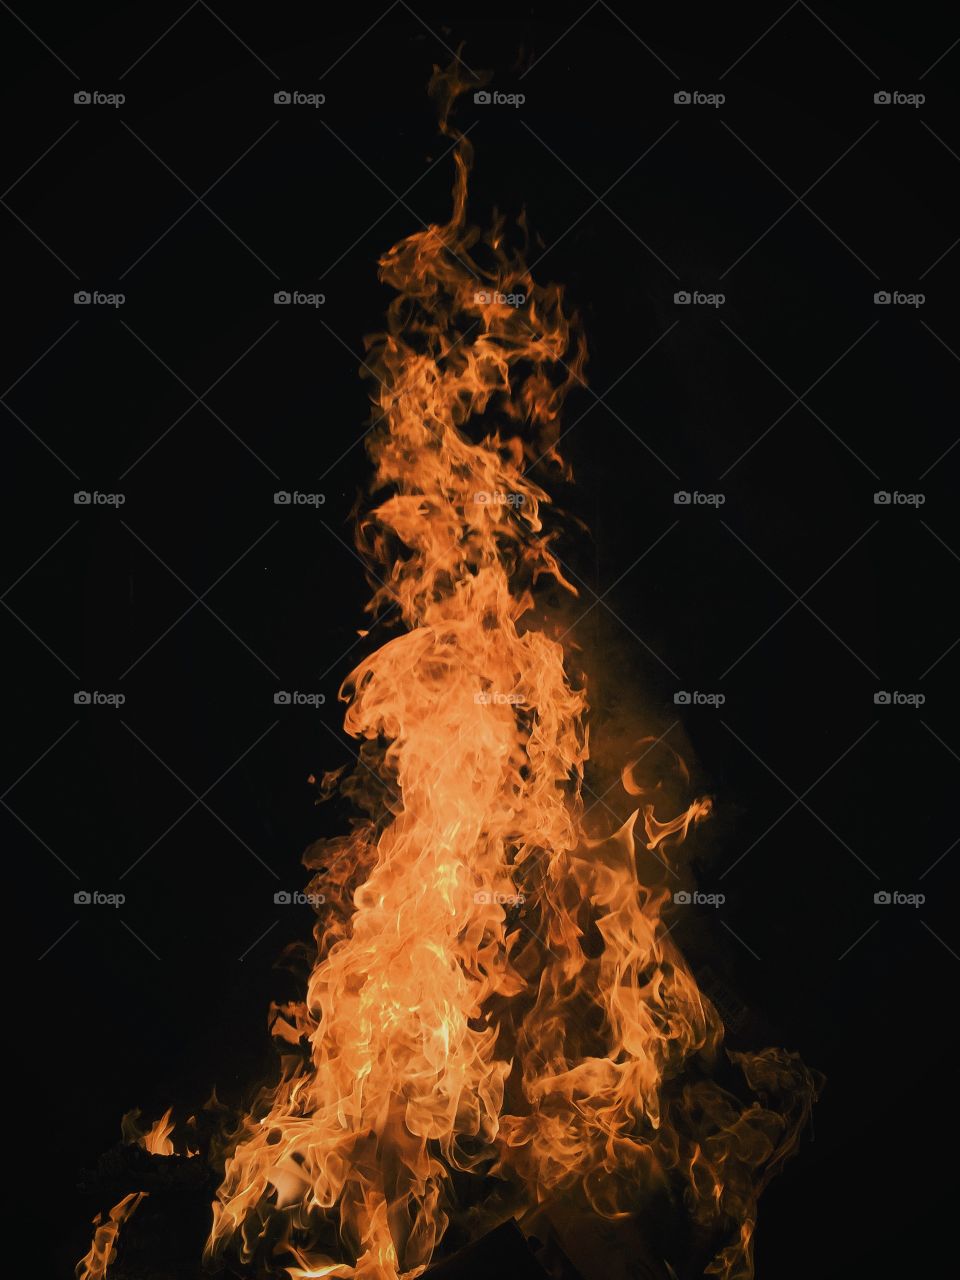 Flames of bonfire